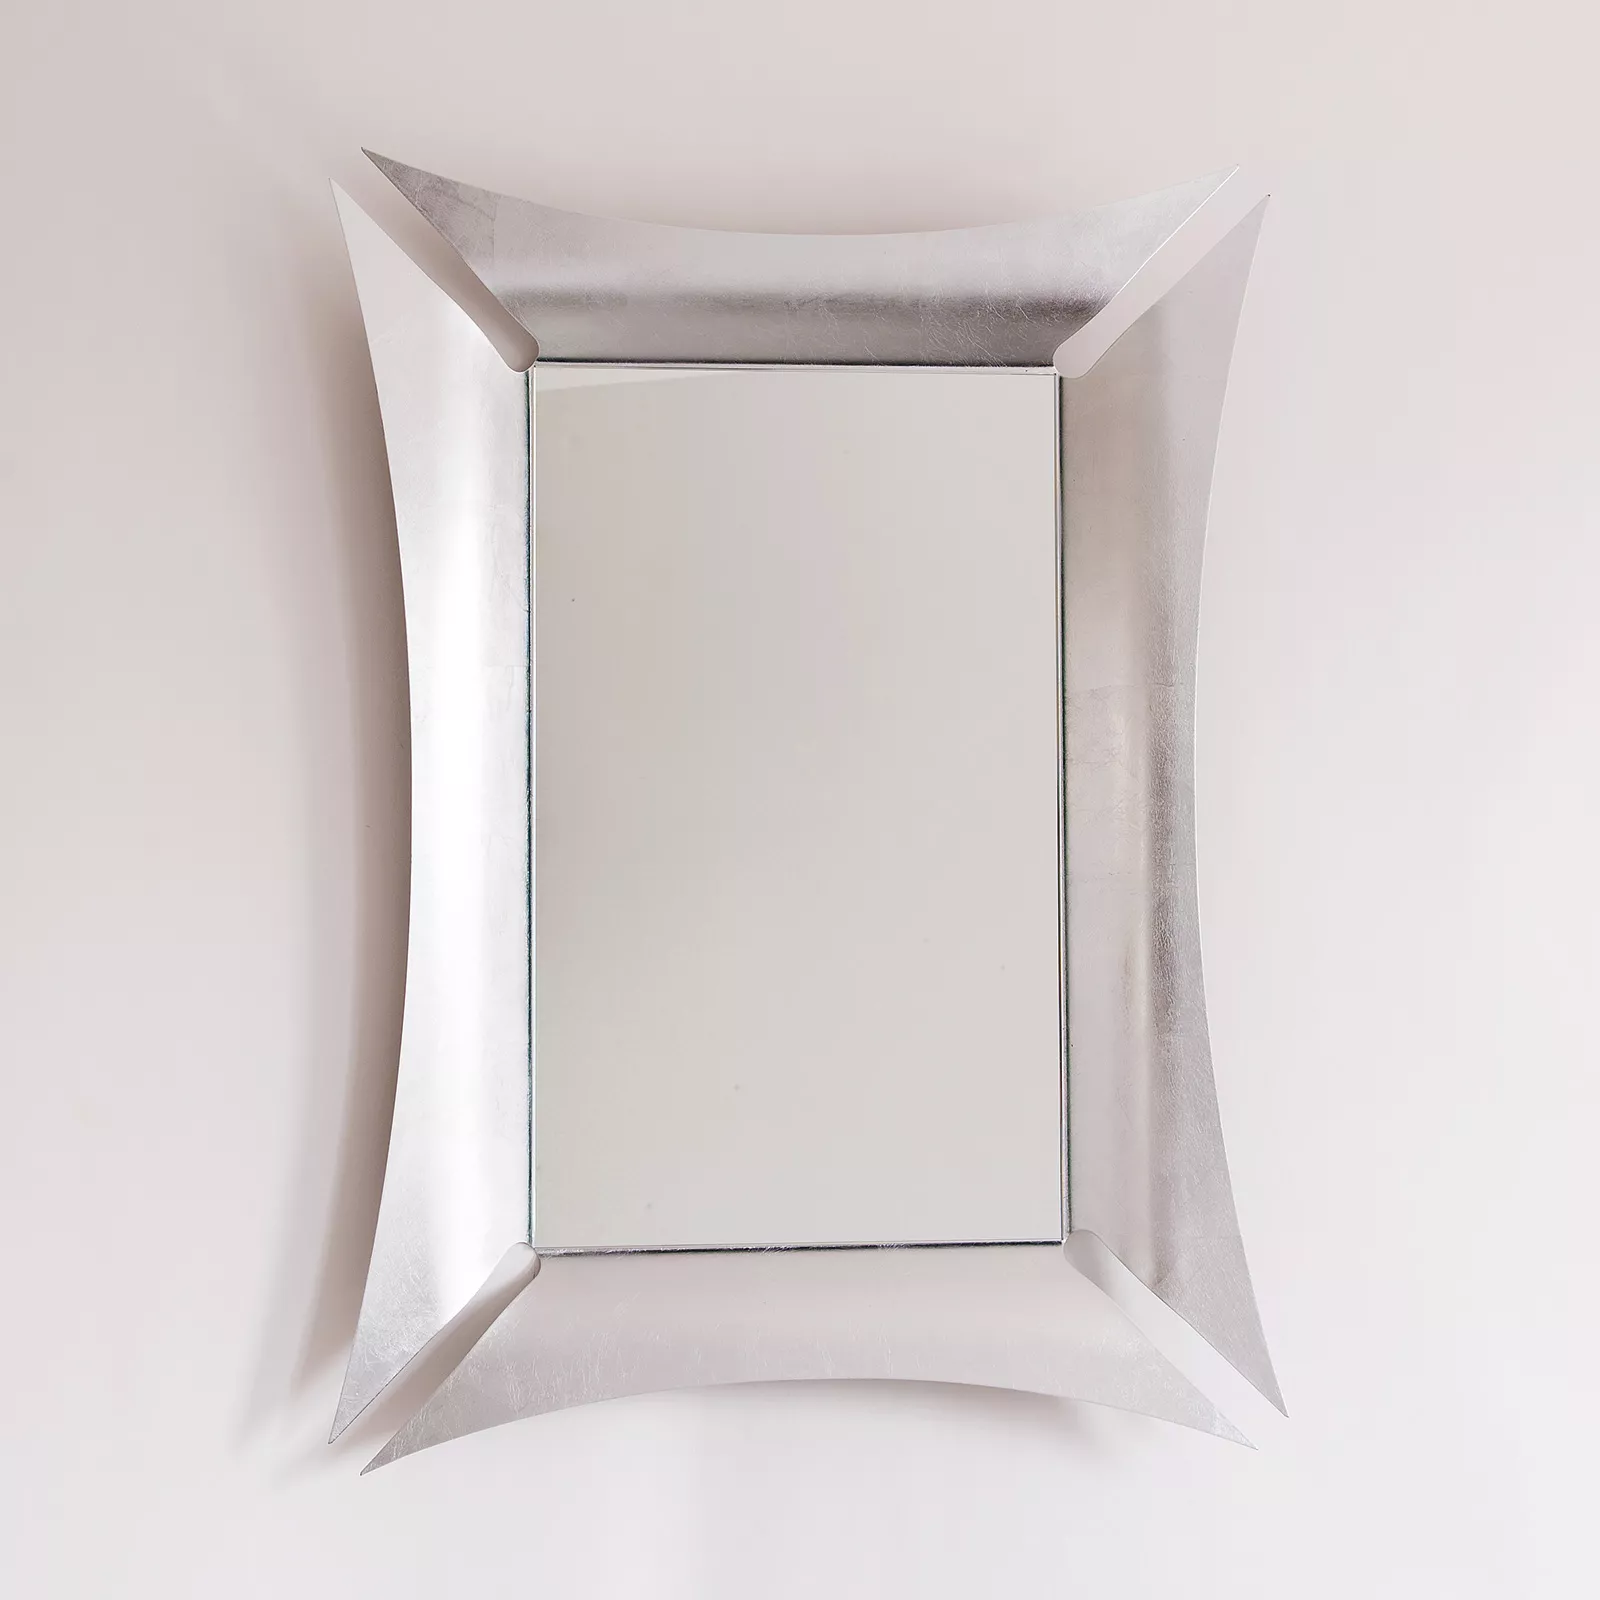 Specchio da parete con cornice foglia argento